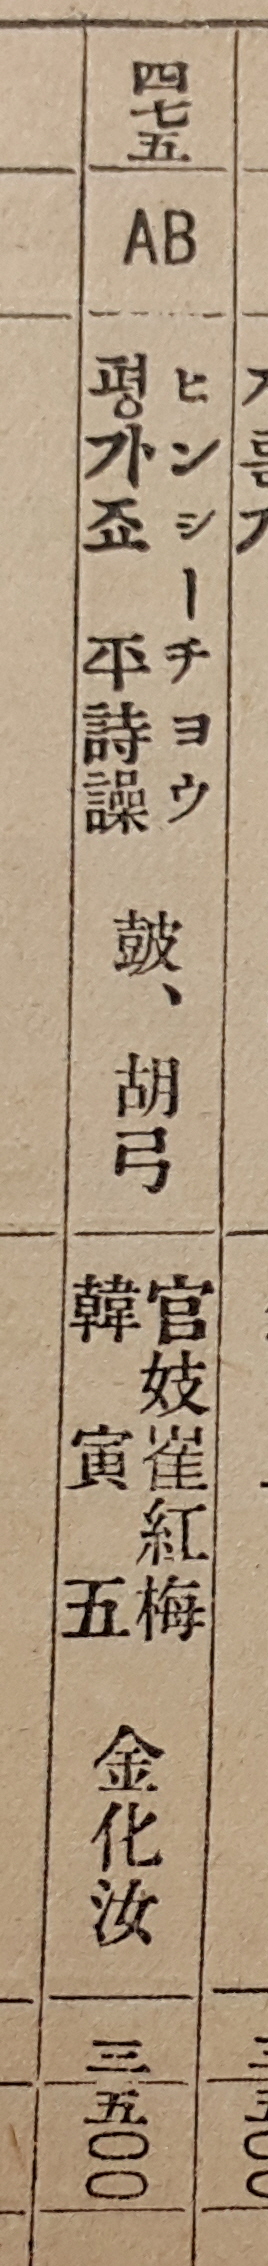 해금 연주가 김화여의 이름이 확인되는 1907년 음반 목록.